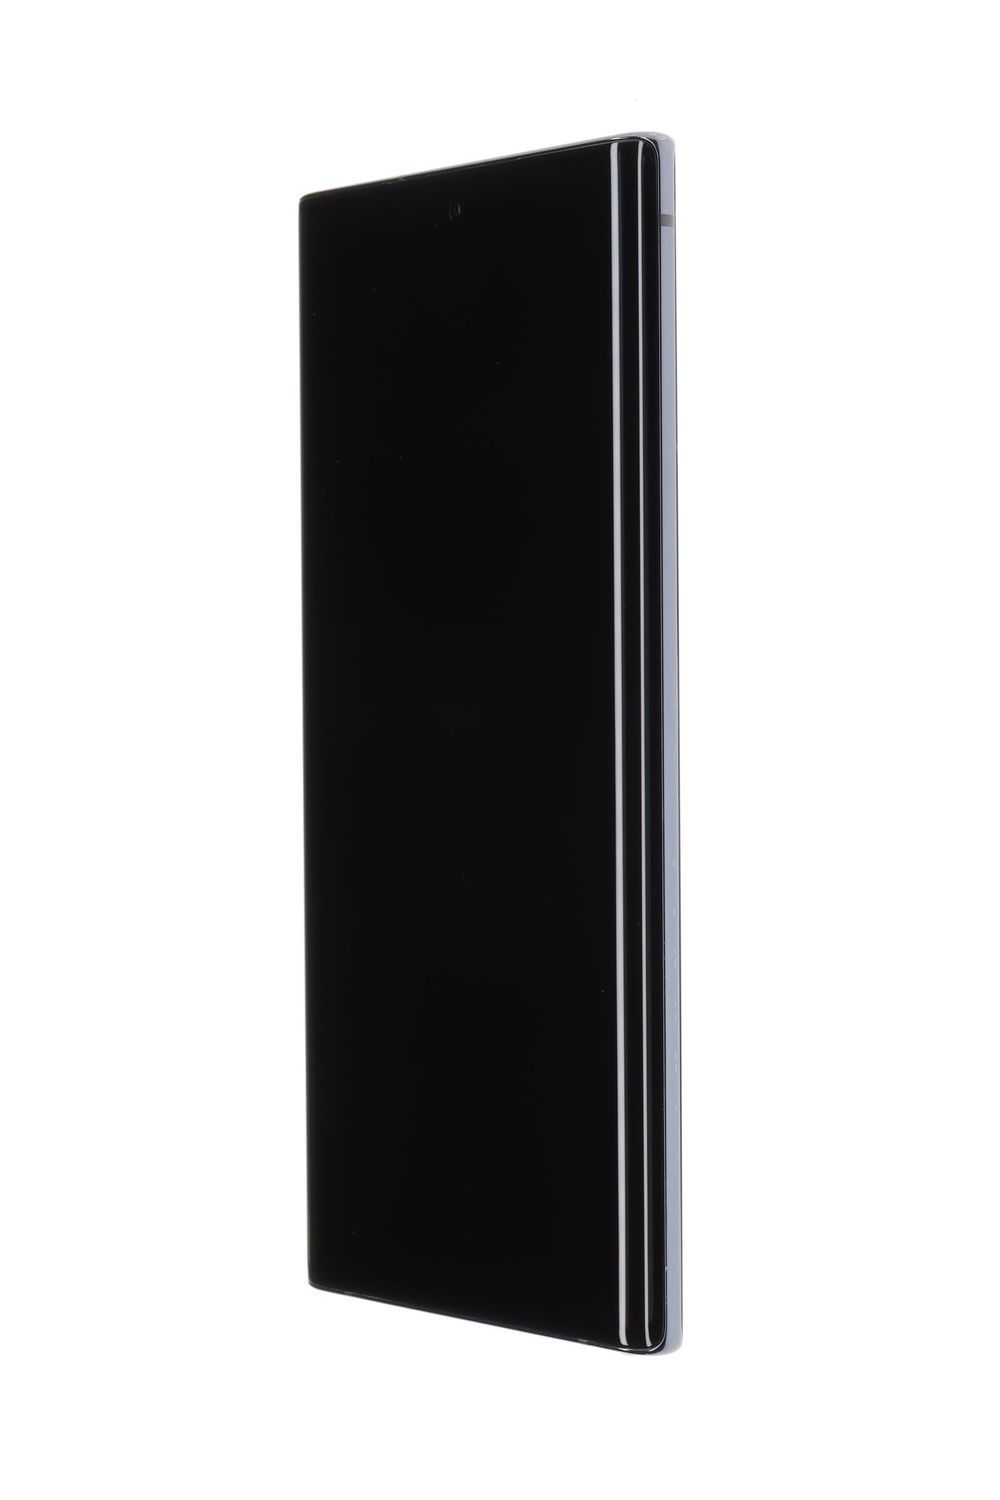 Samsung Galaxy Note 10 Aura Black Dual SIM - 256GB